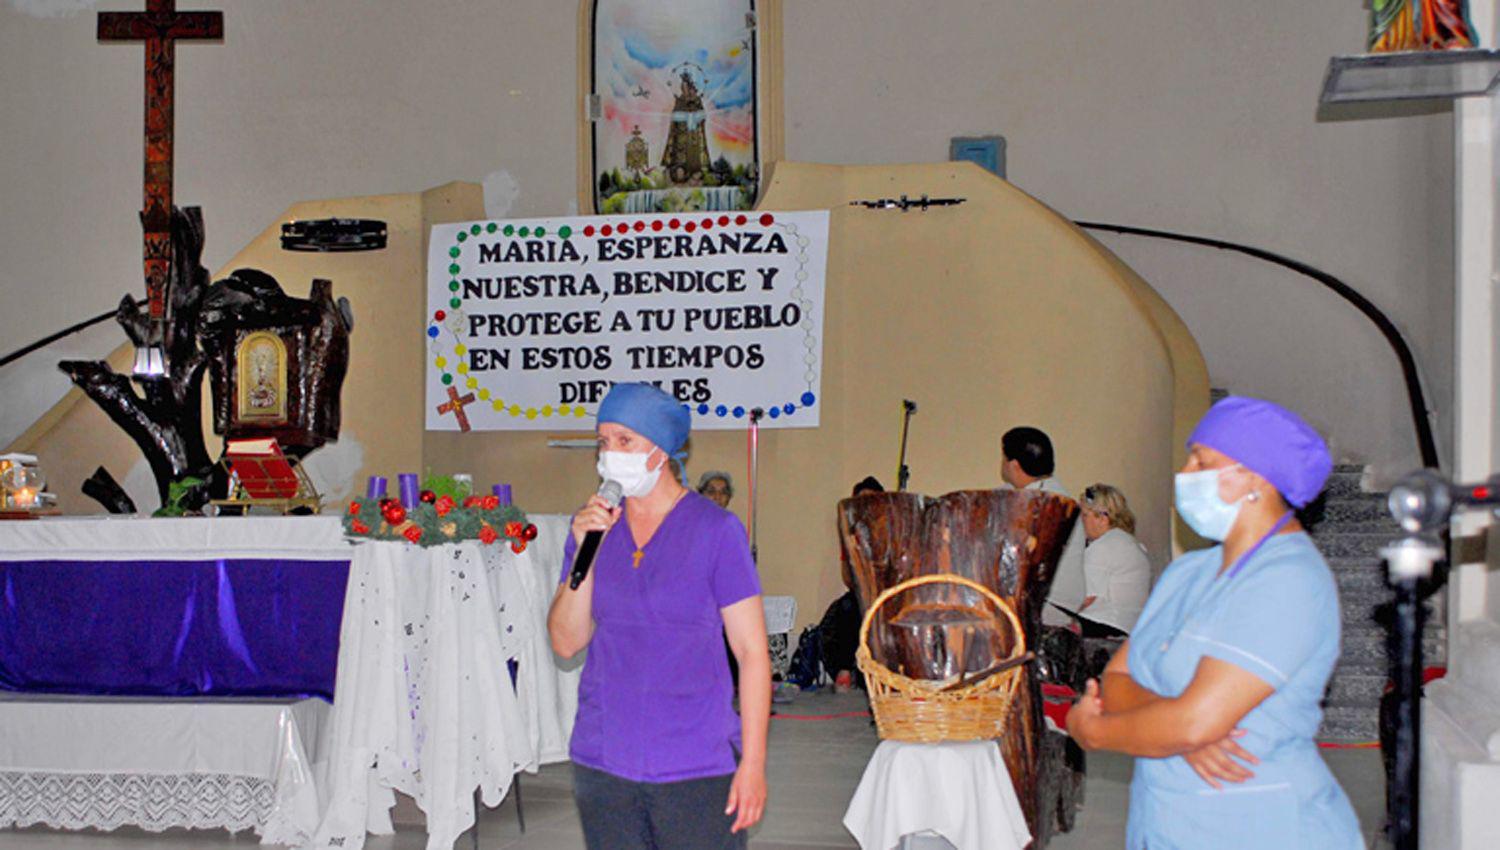 Personal de la salud que desempeña funciones en el hospital loretano participa de una de las misas
y dan un fuerte testimonio de su tarea